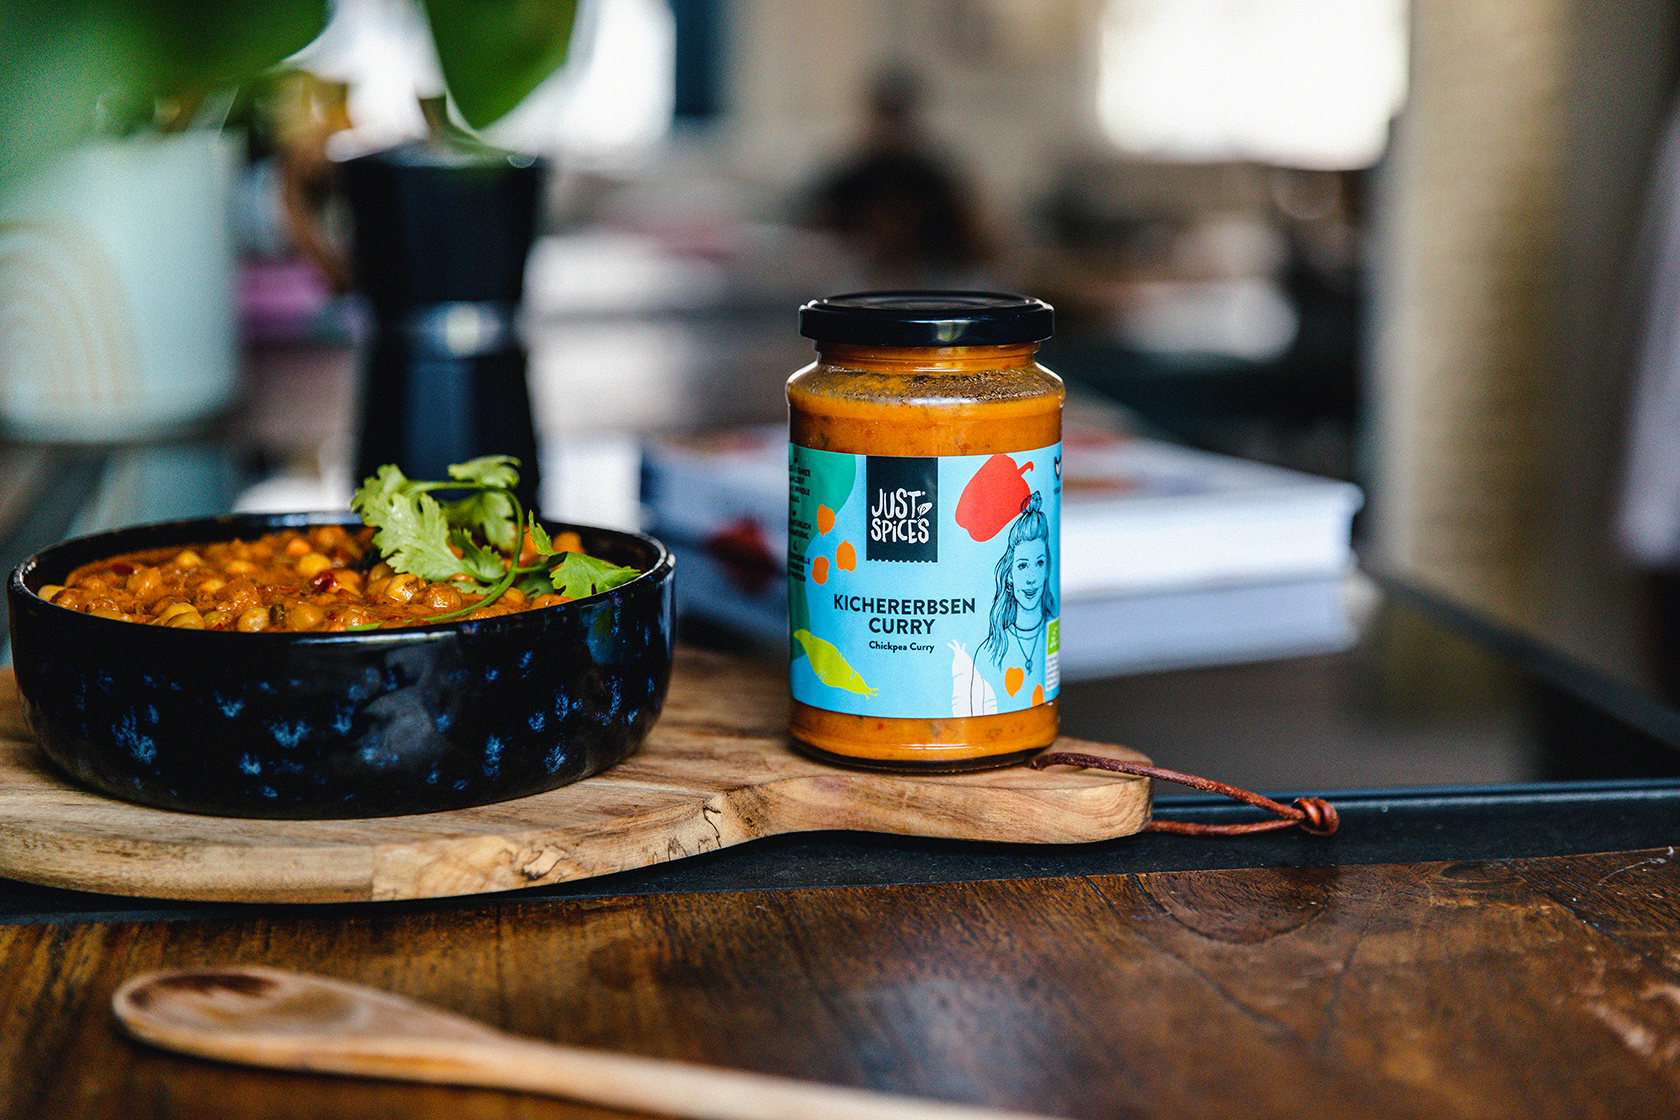 Kichererbsen-Curry, eines von dfei neuen Bio-Fertiggerichten - Quelle: Just Spices